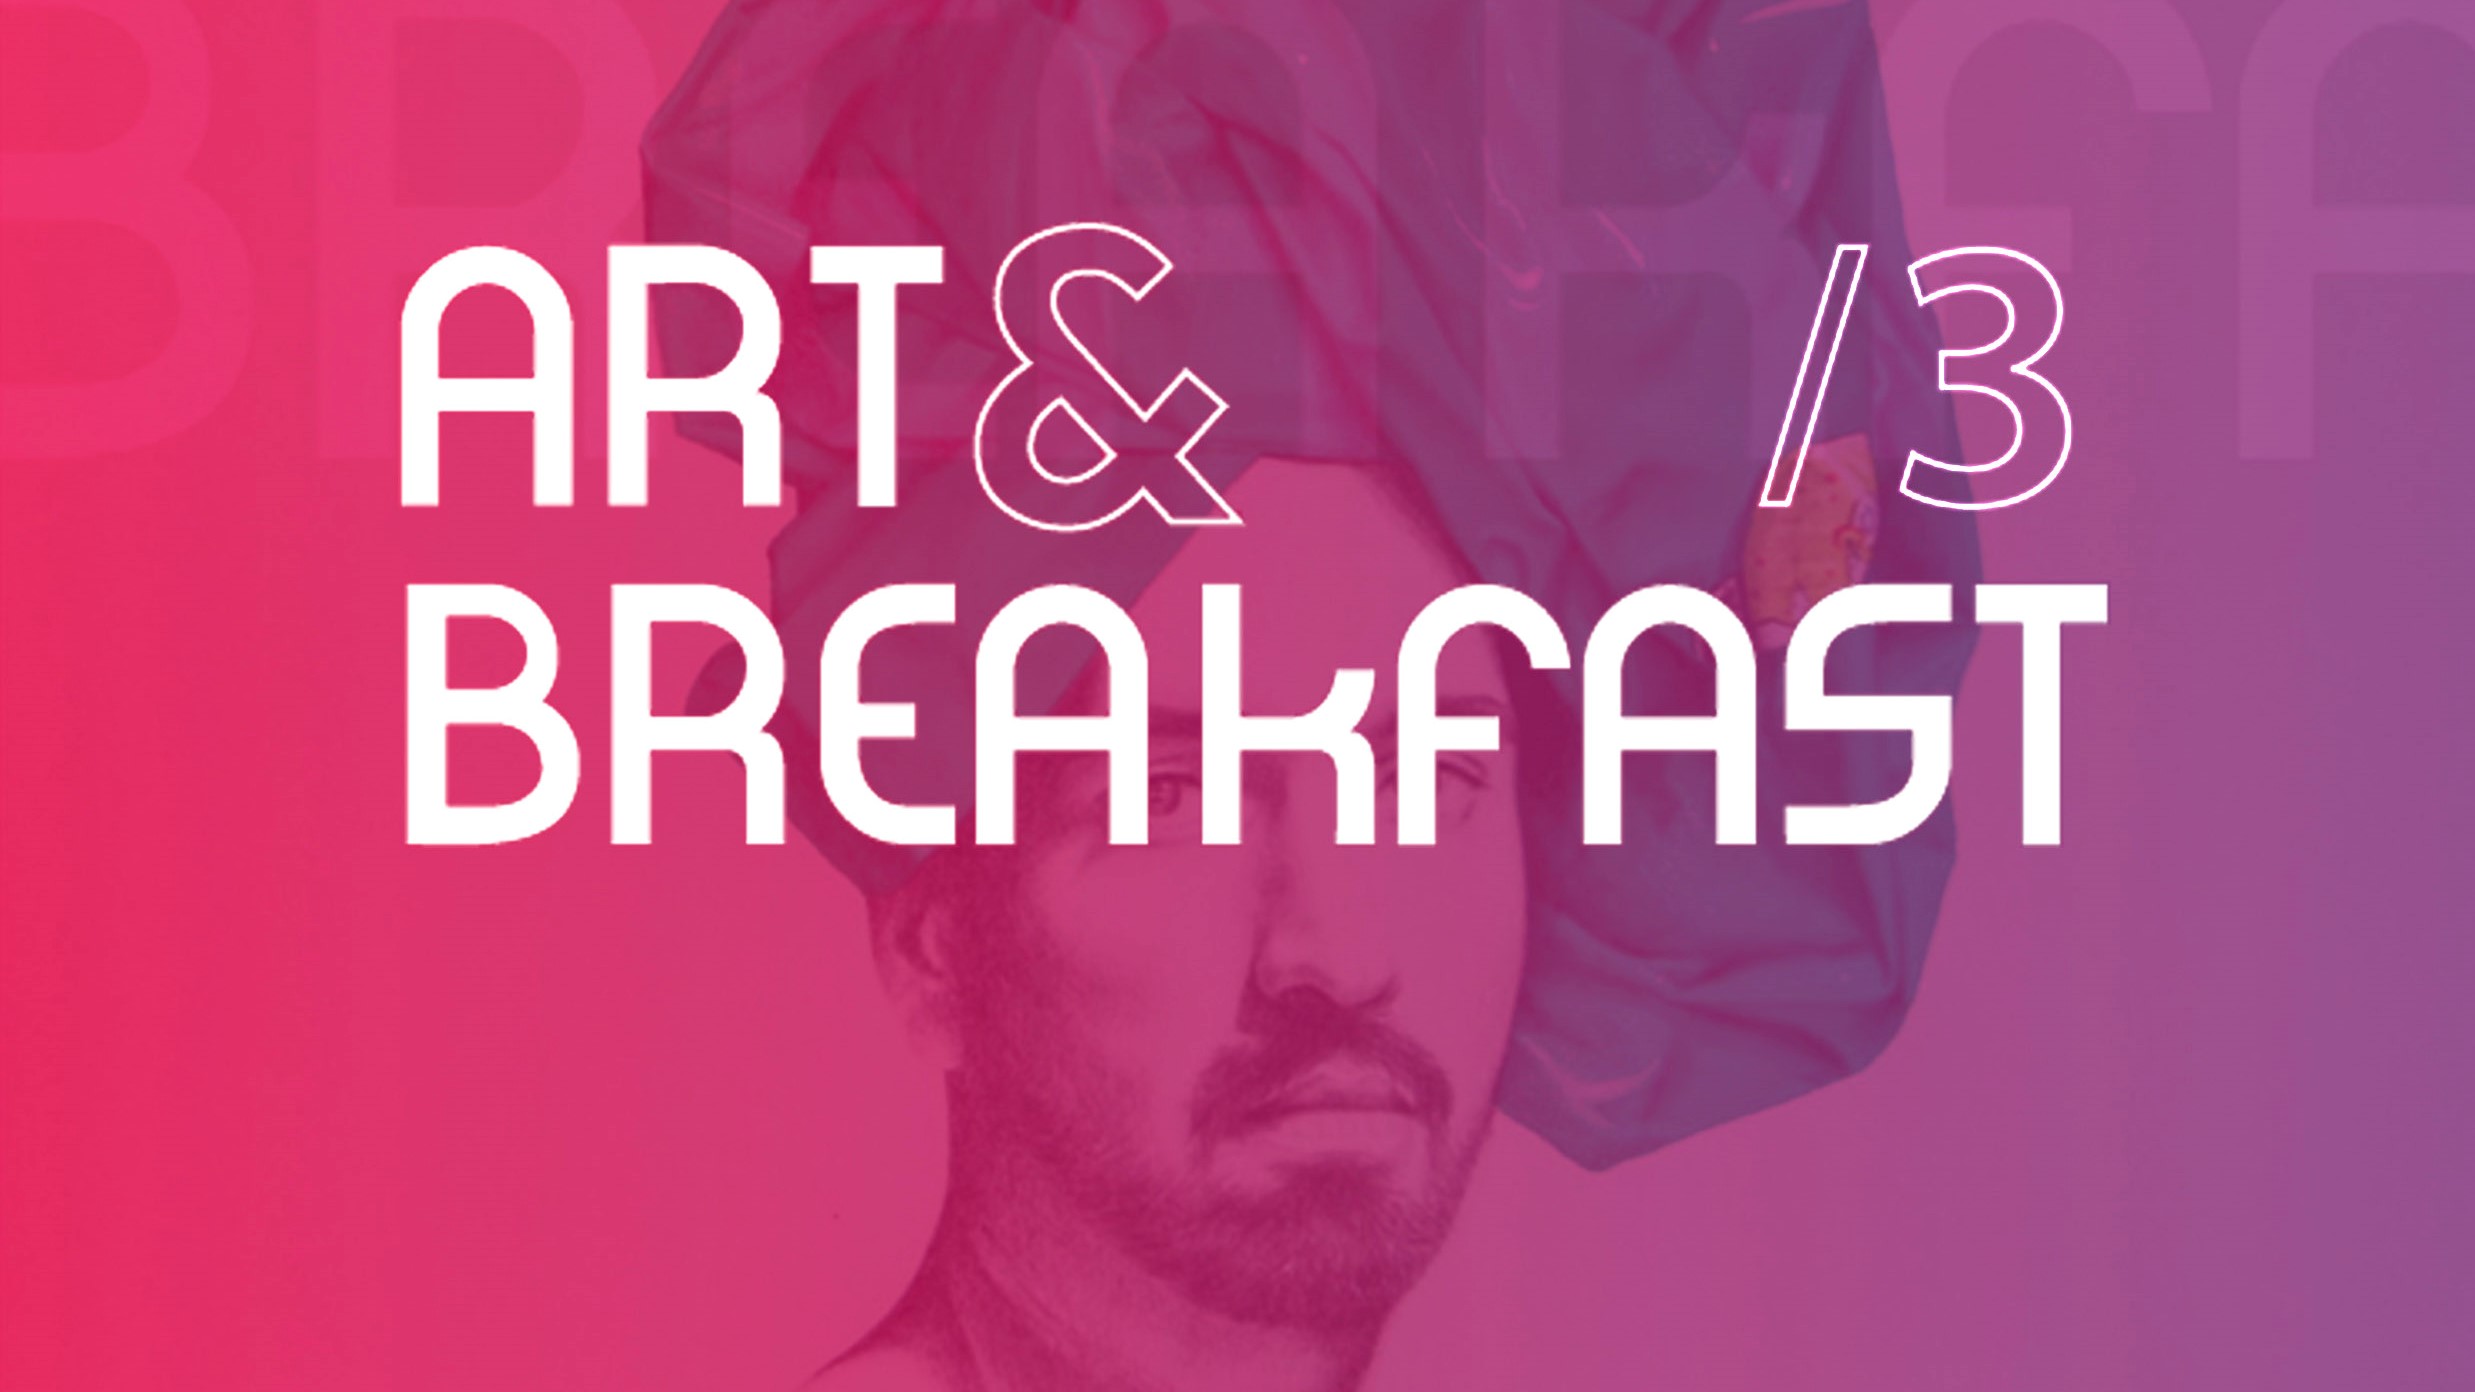 Art & Breakfast /3